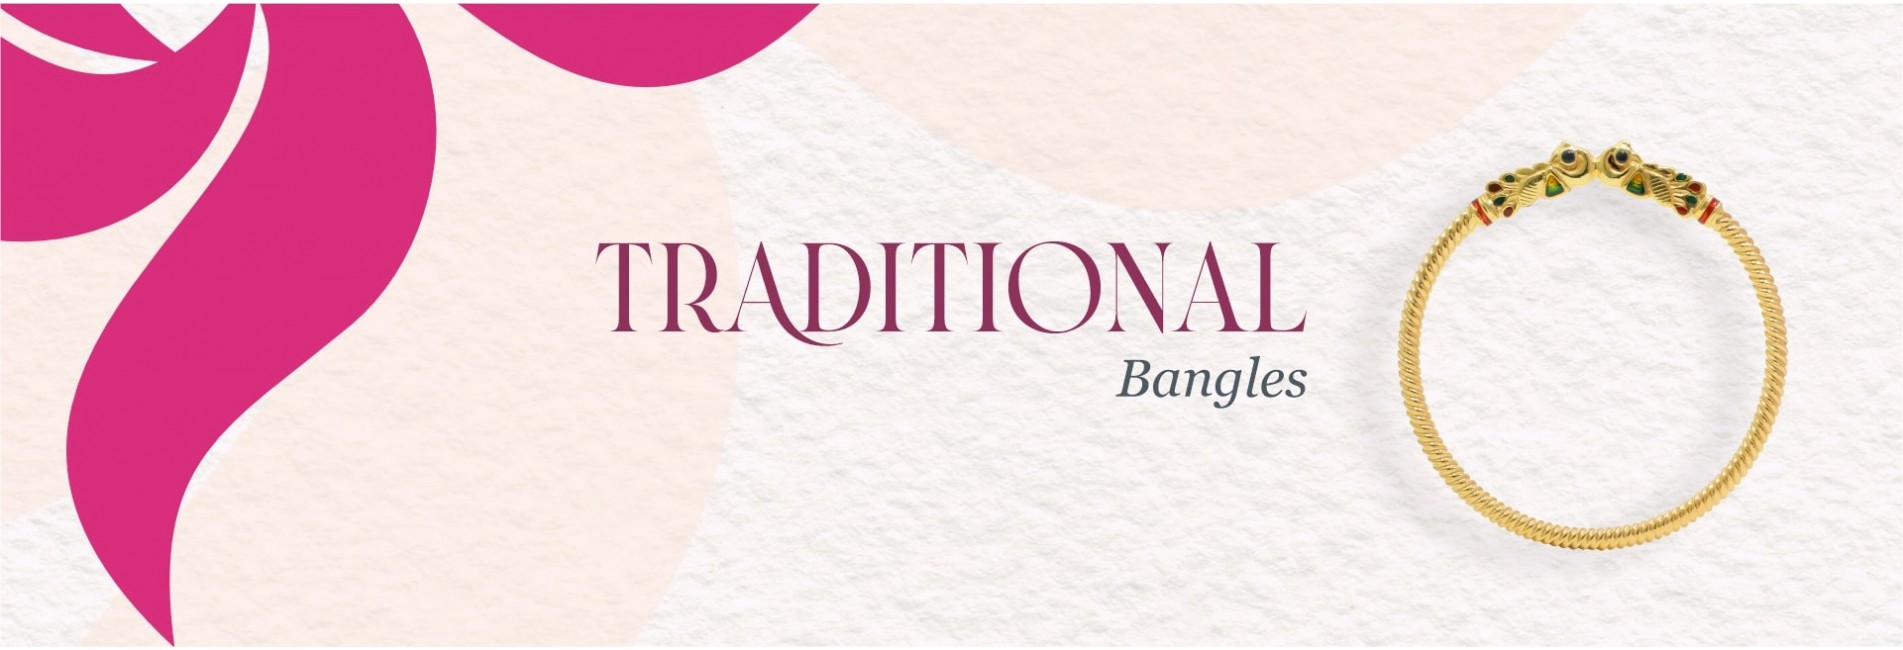 Traditional Bangles